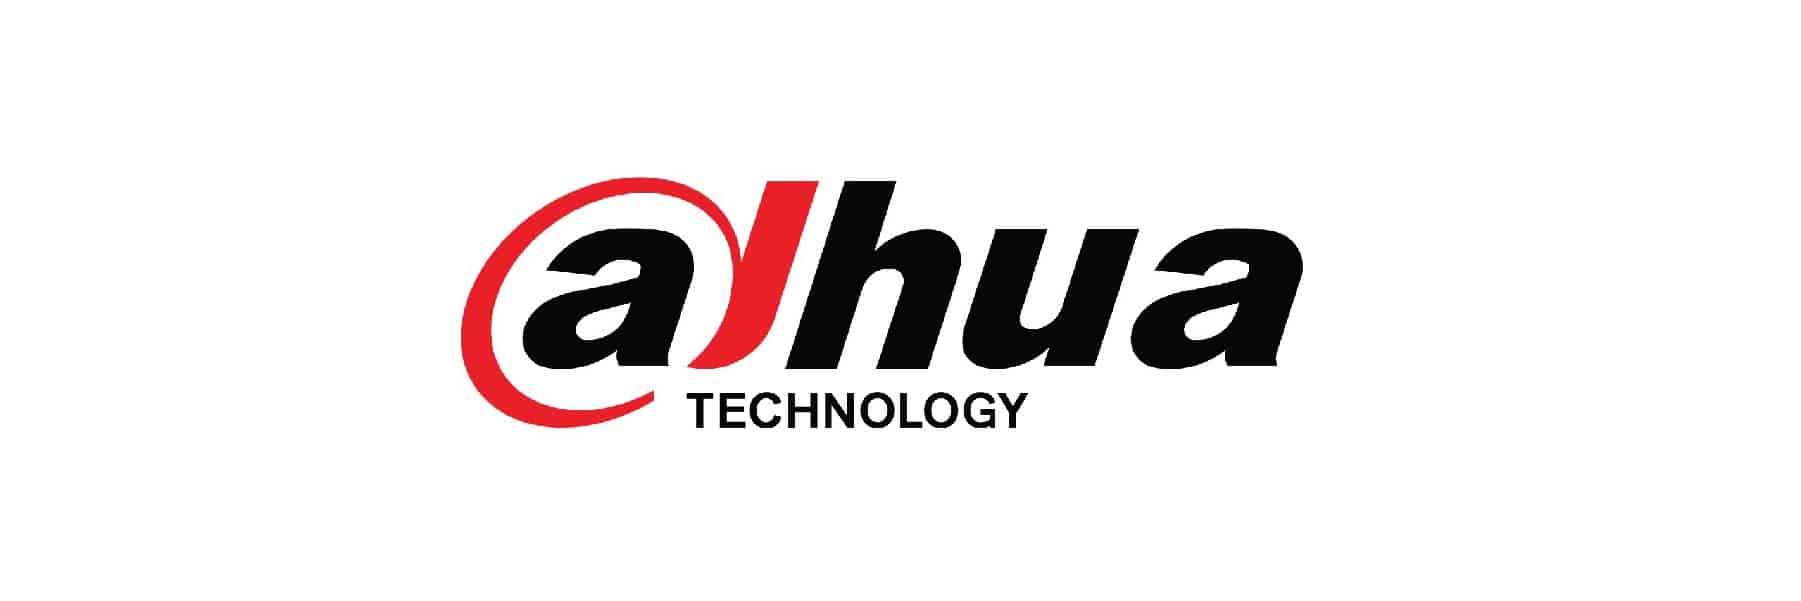 dahua technology